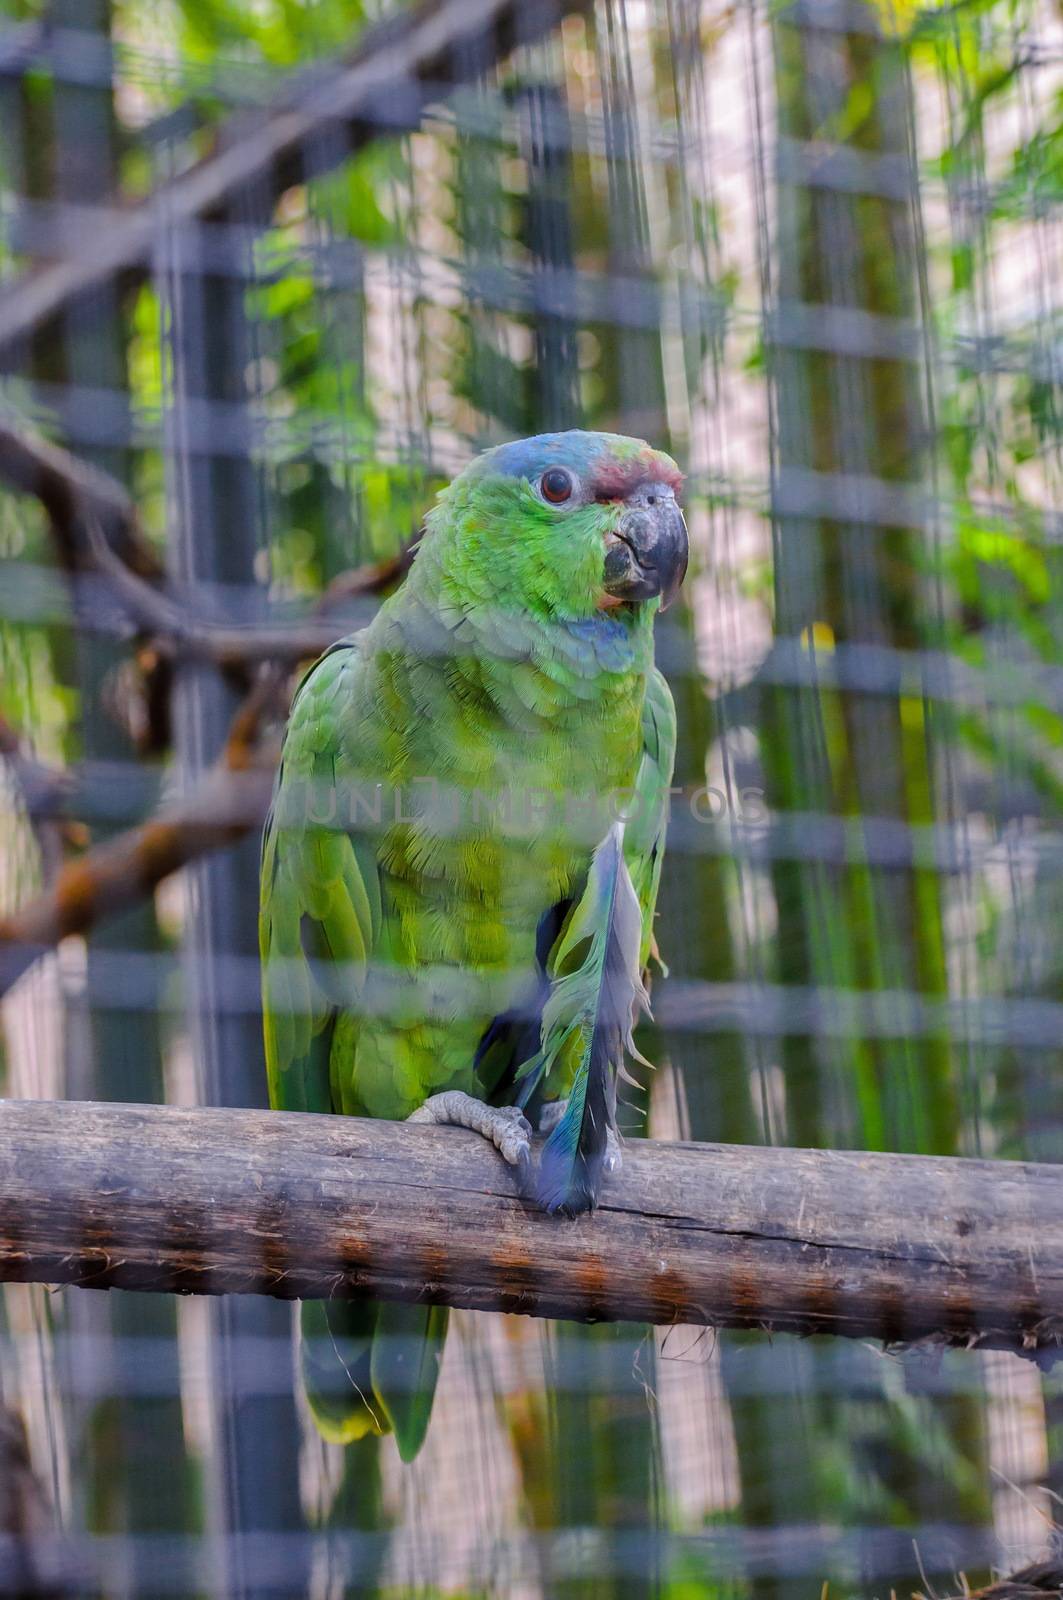 Green Amazon Parrot in Puerto de la Cruz,Tenerife by Eagle2308